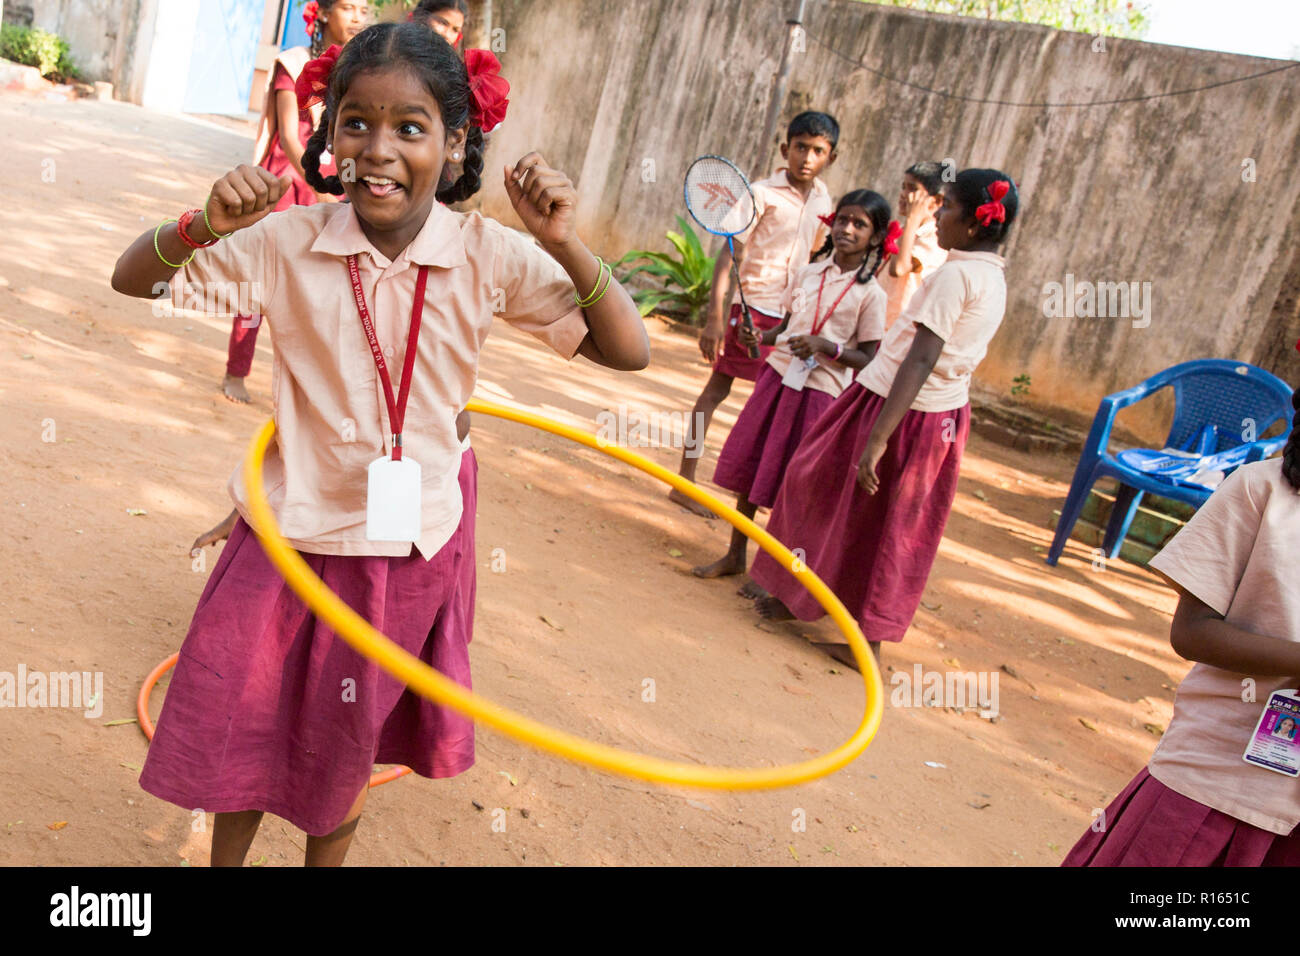 Niños jugando en un parque infantil con una niña haciendo hula hoop con una  chaqueta naranja fotos de archivo